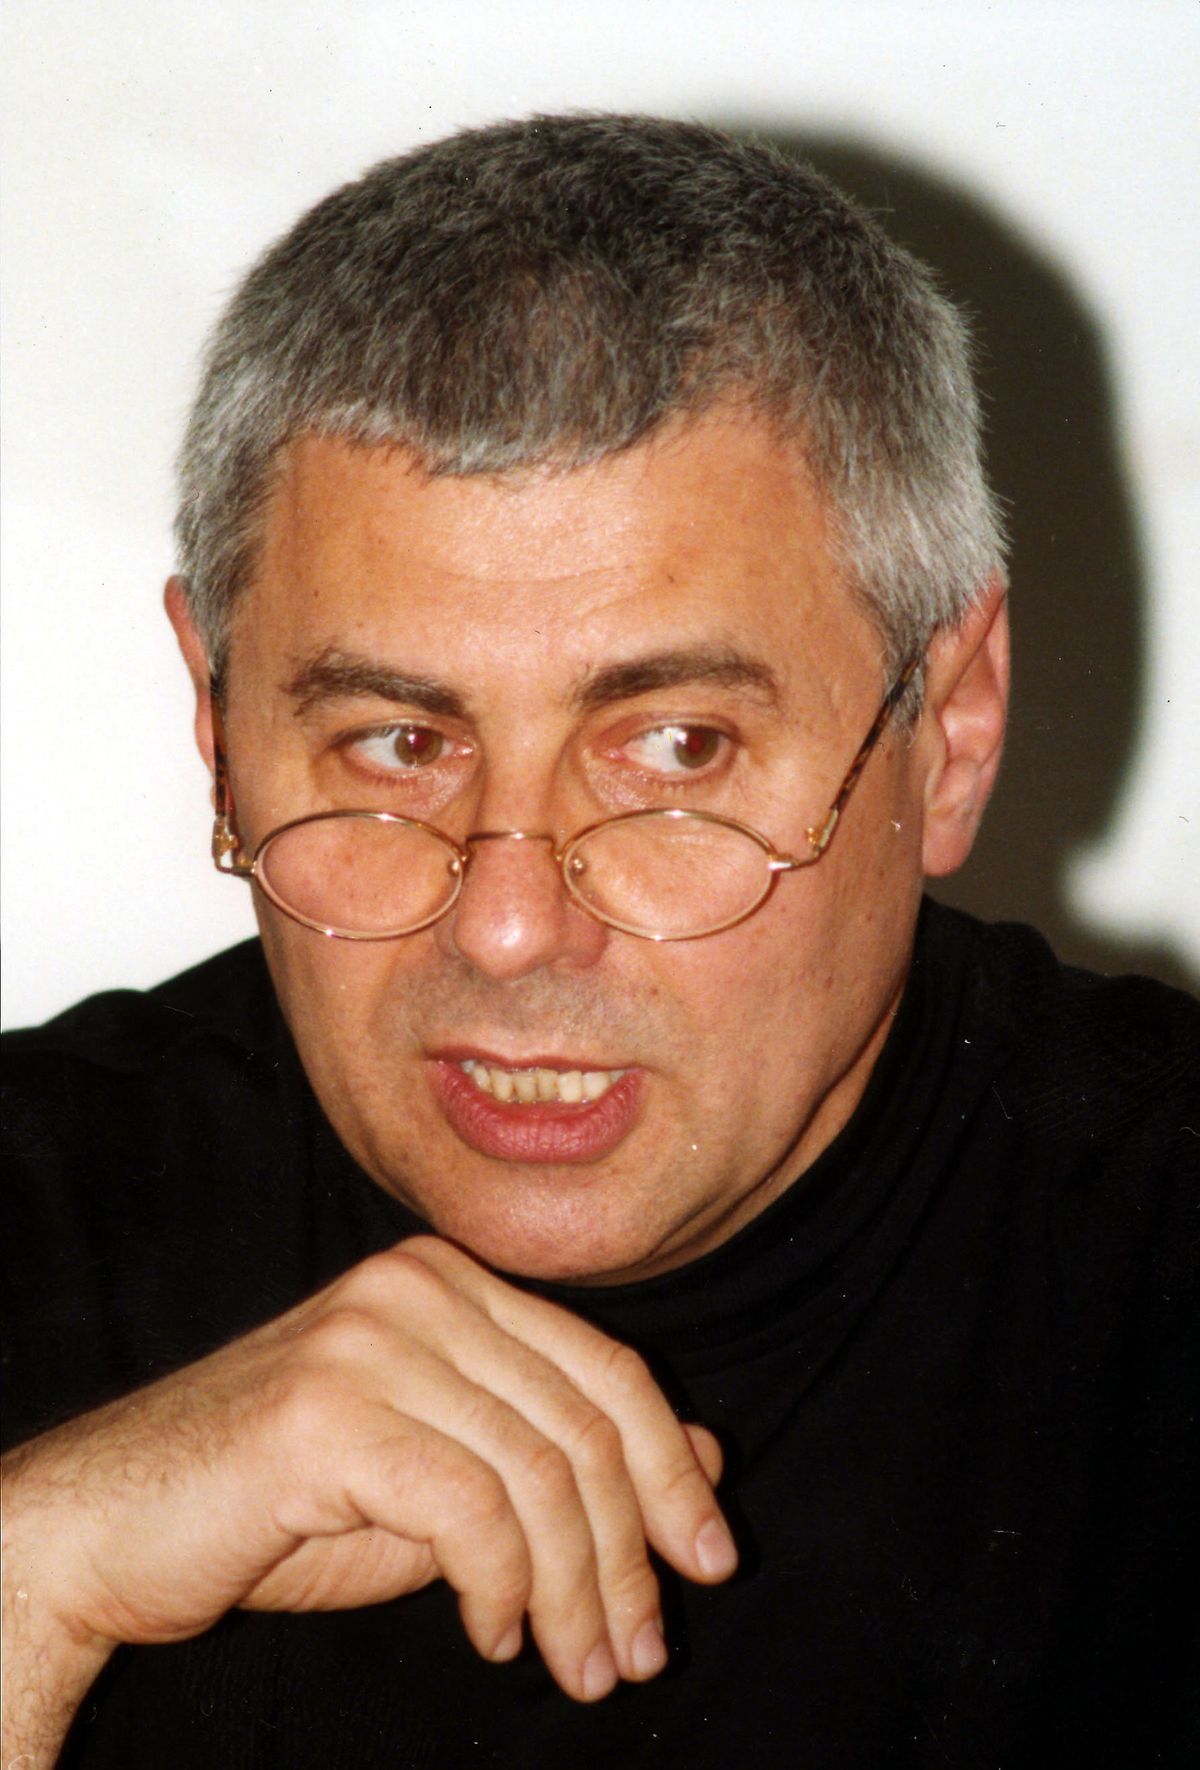 Gleb Pavlovsky